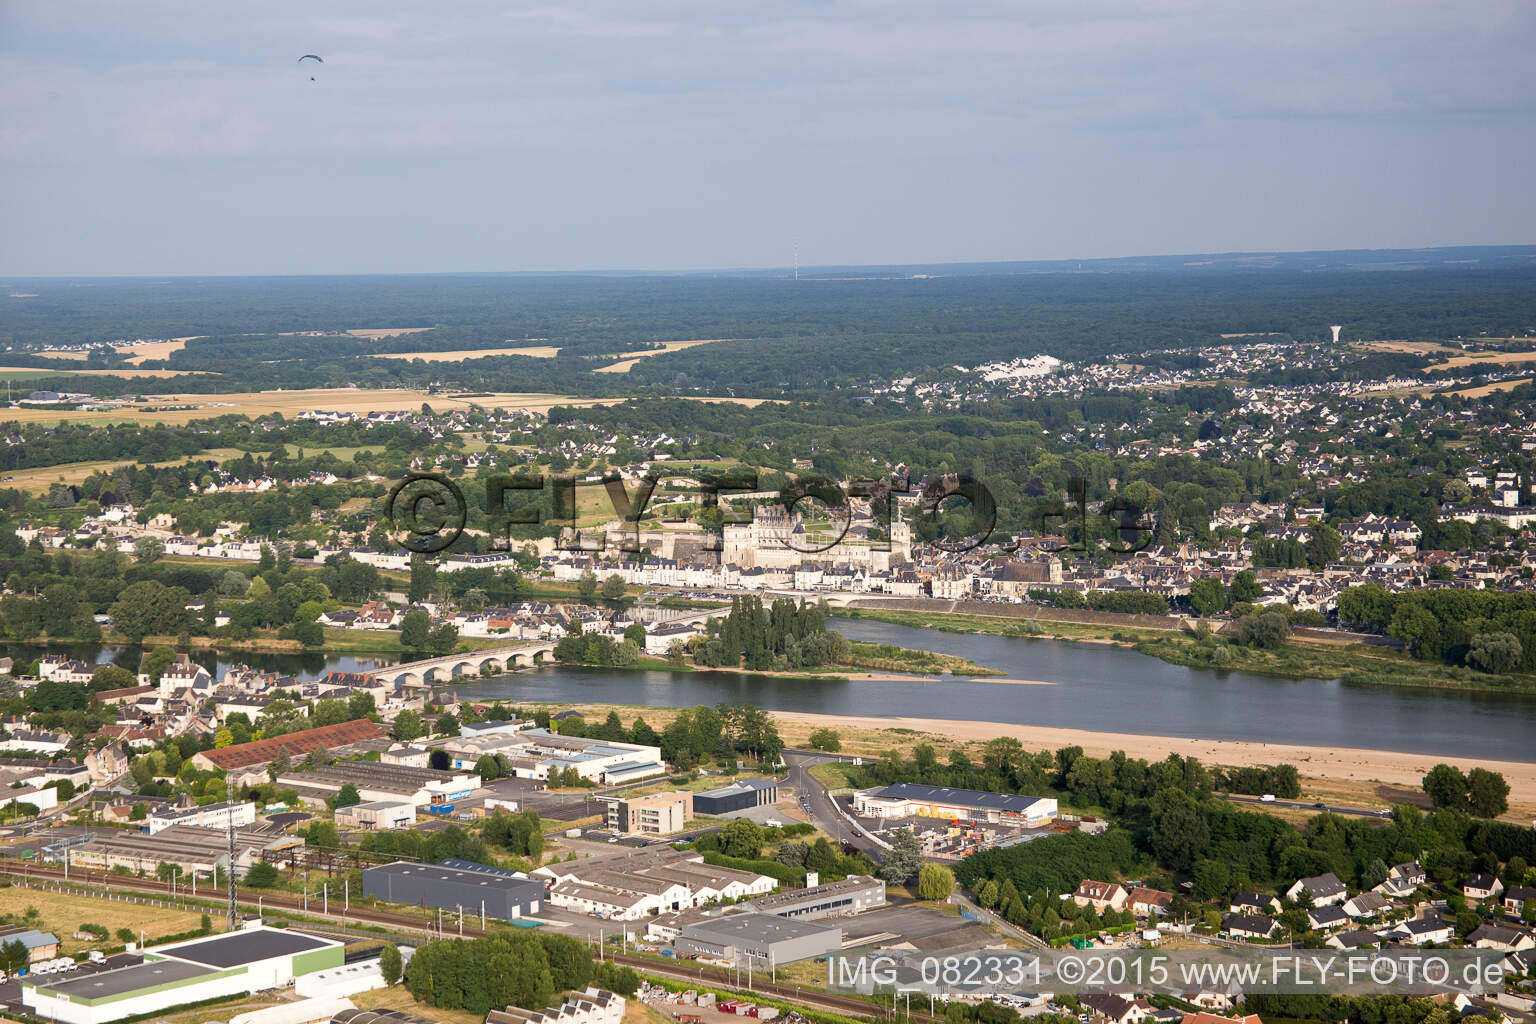 Vue aérienne de Amboise dans le département Indre et Loire, France